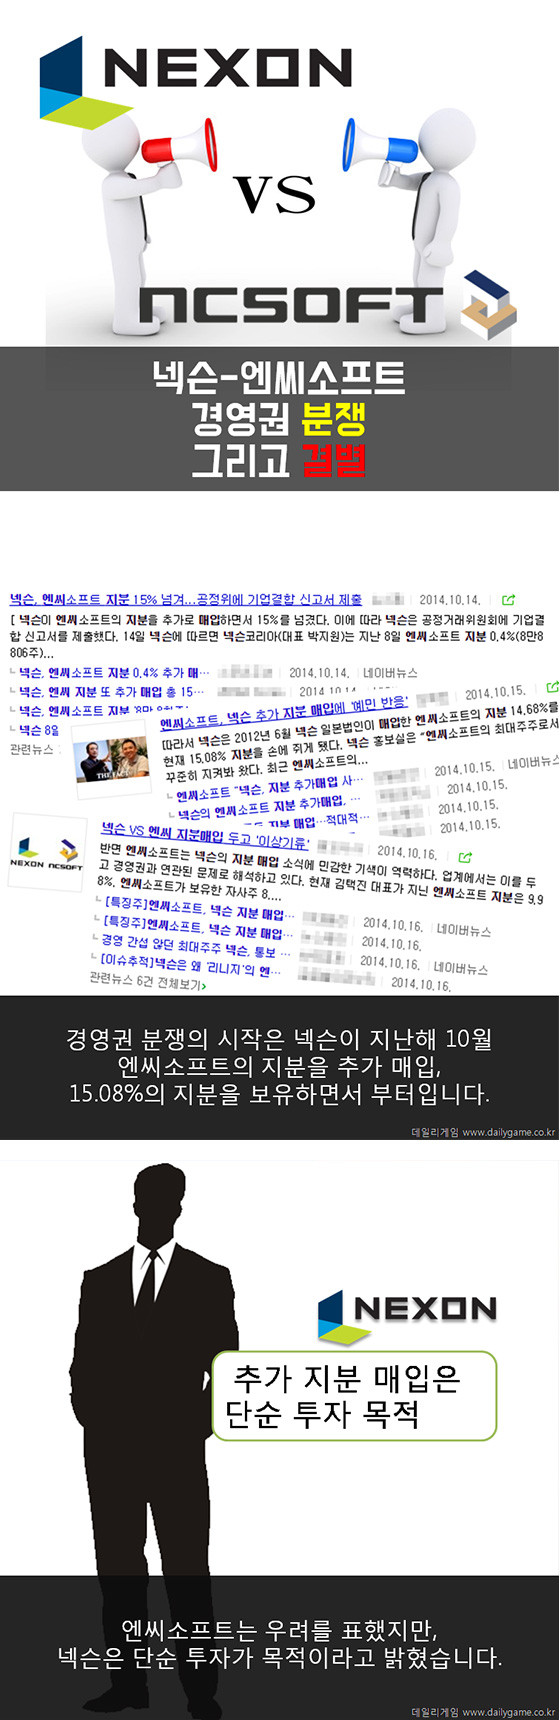 [카드뉴스] 2015년 게임업계 10대 뉴스(상)